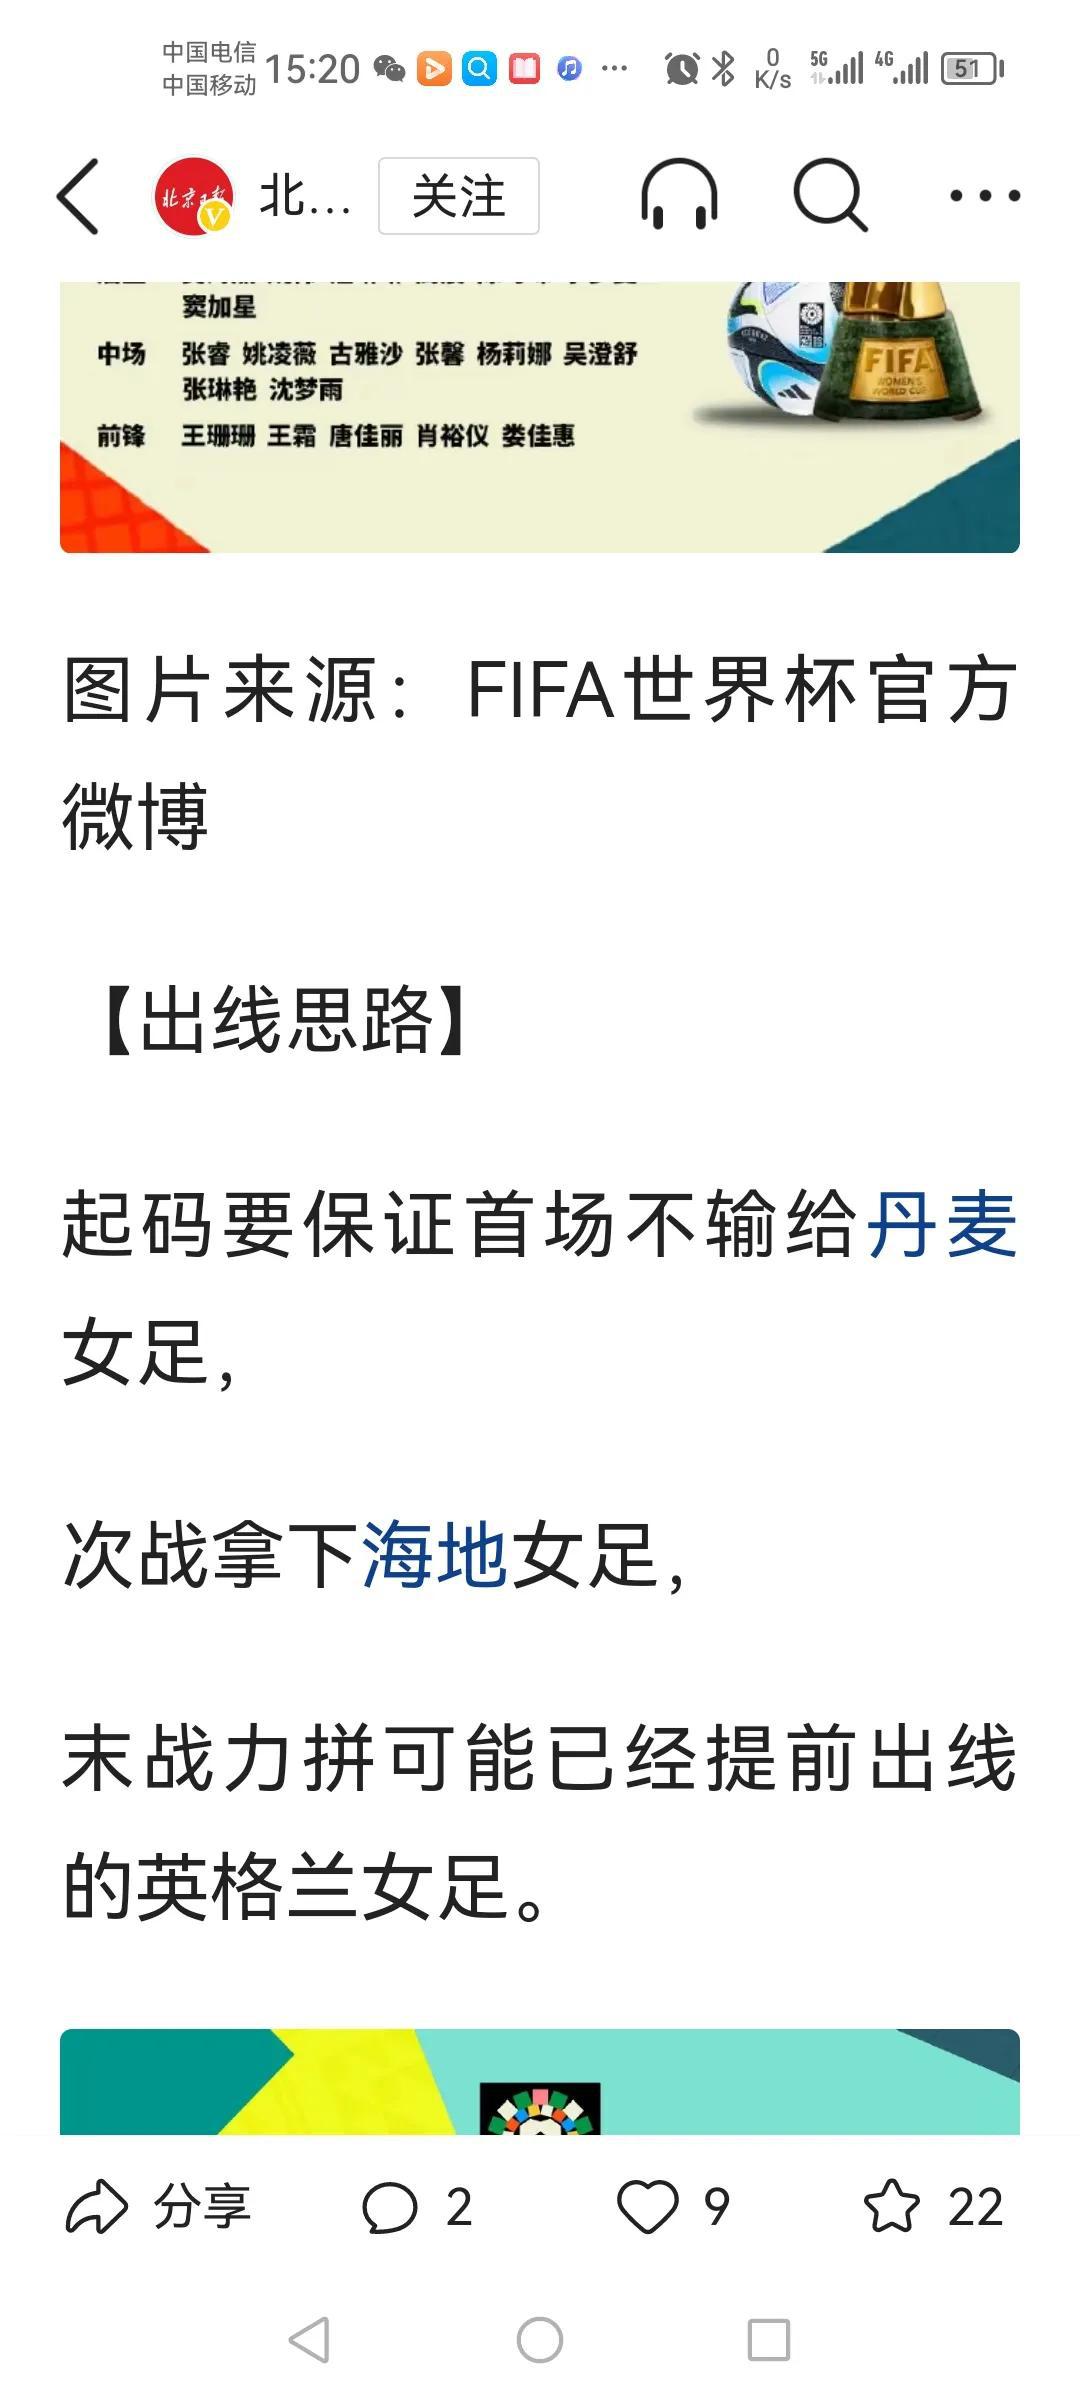 中国女足世界杯出征了！
王霜、唐佳丽、张琳艳以及九球天后王珊珊均在列！
不过世界(2)